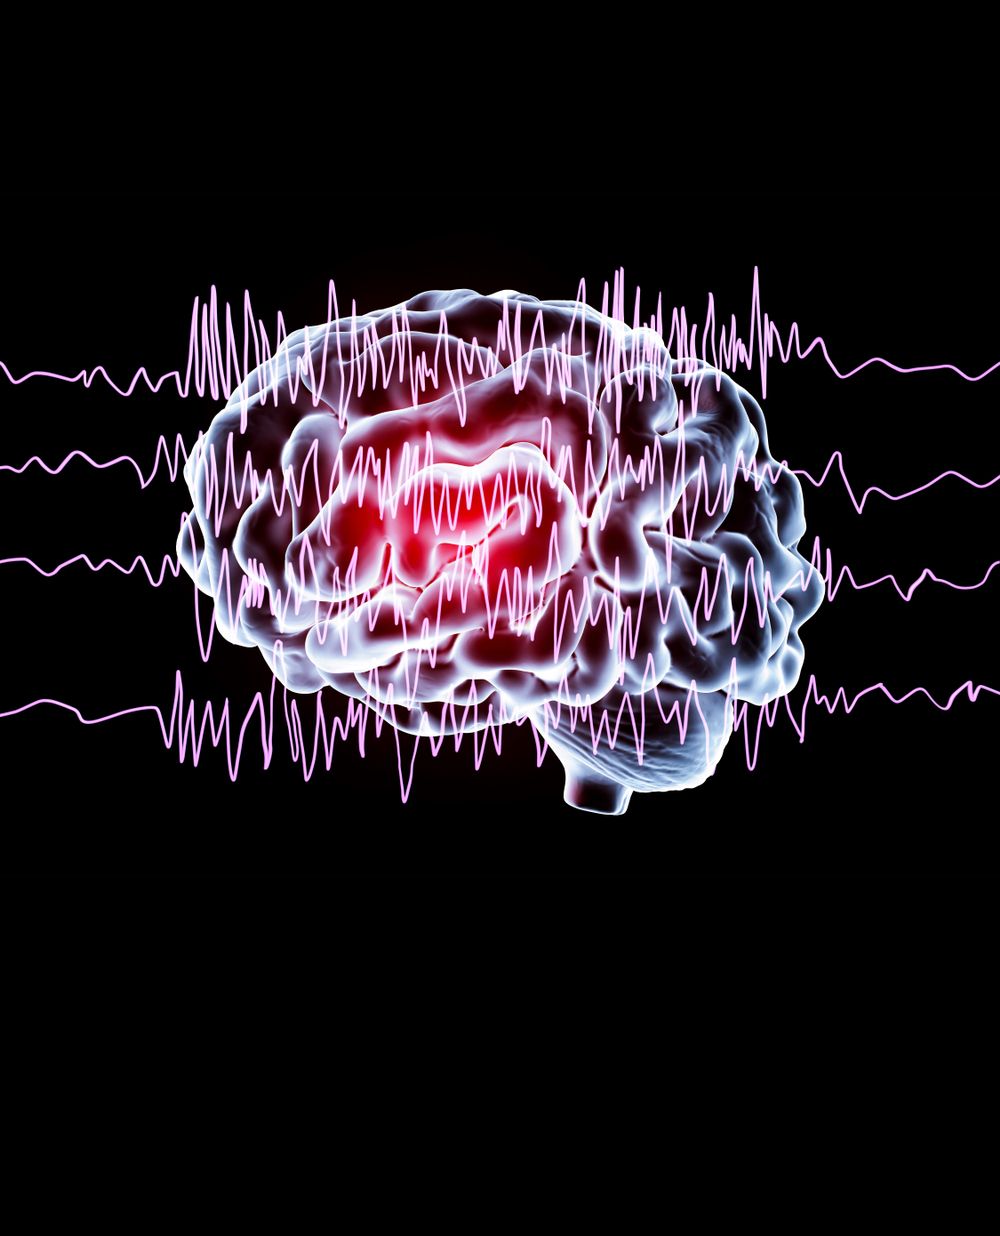 Un trattamento con ossigeno al 100% può migliorare l’apprendimento motorio in un cervello sano